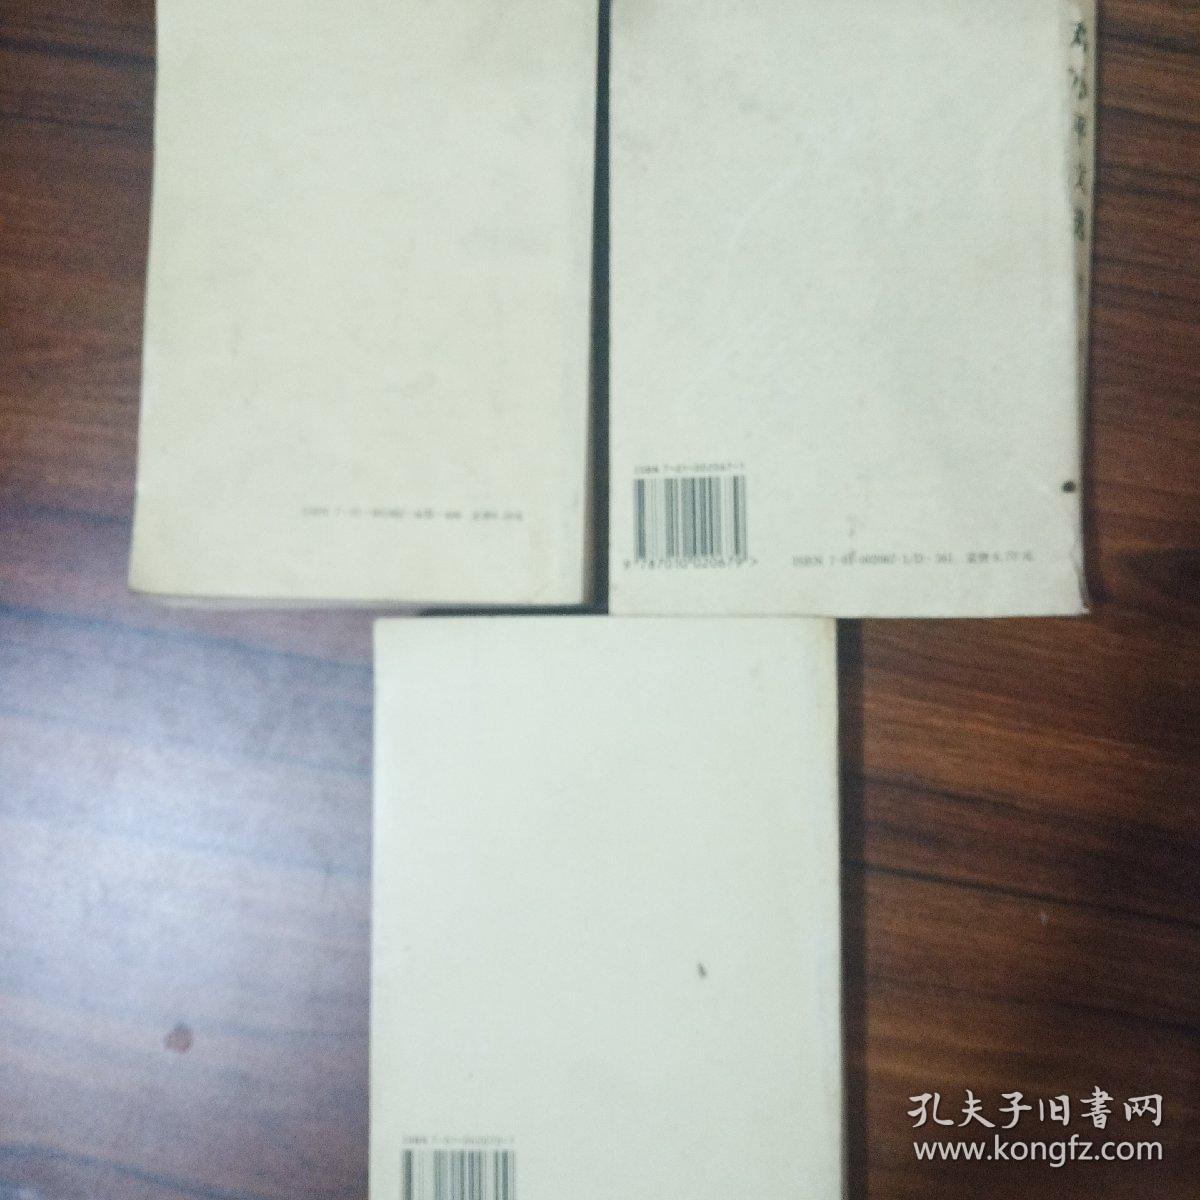 三本有色差，三本版次不同，邓小平文选 第一卷第二卷第三卷共三册合售，售价为3本的价格